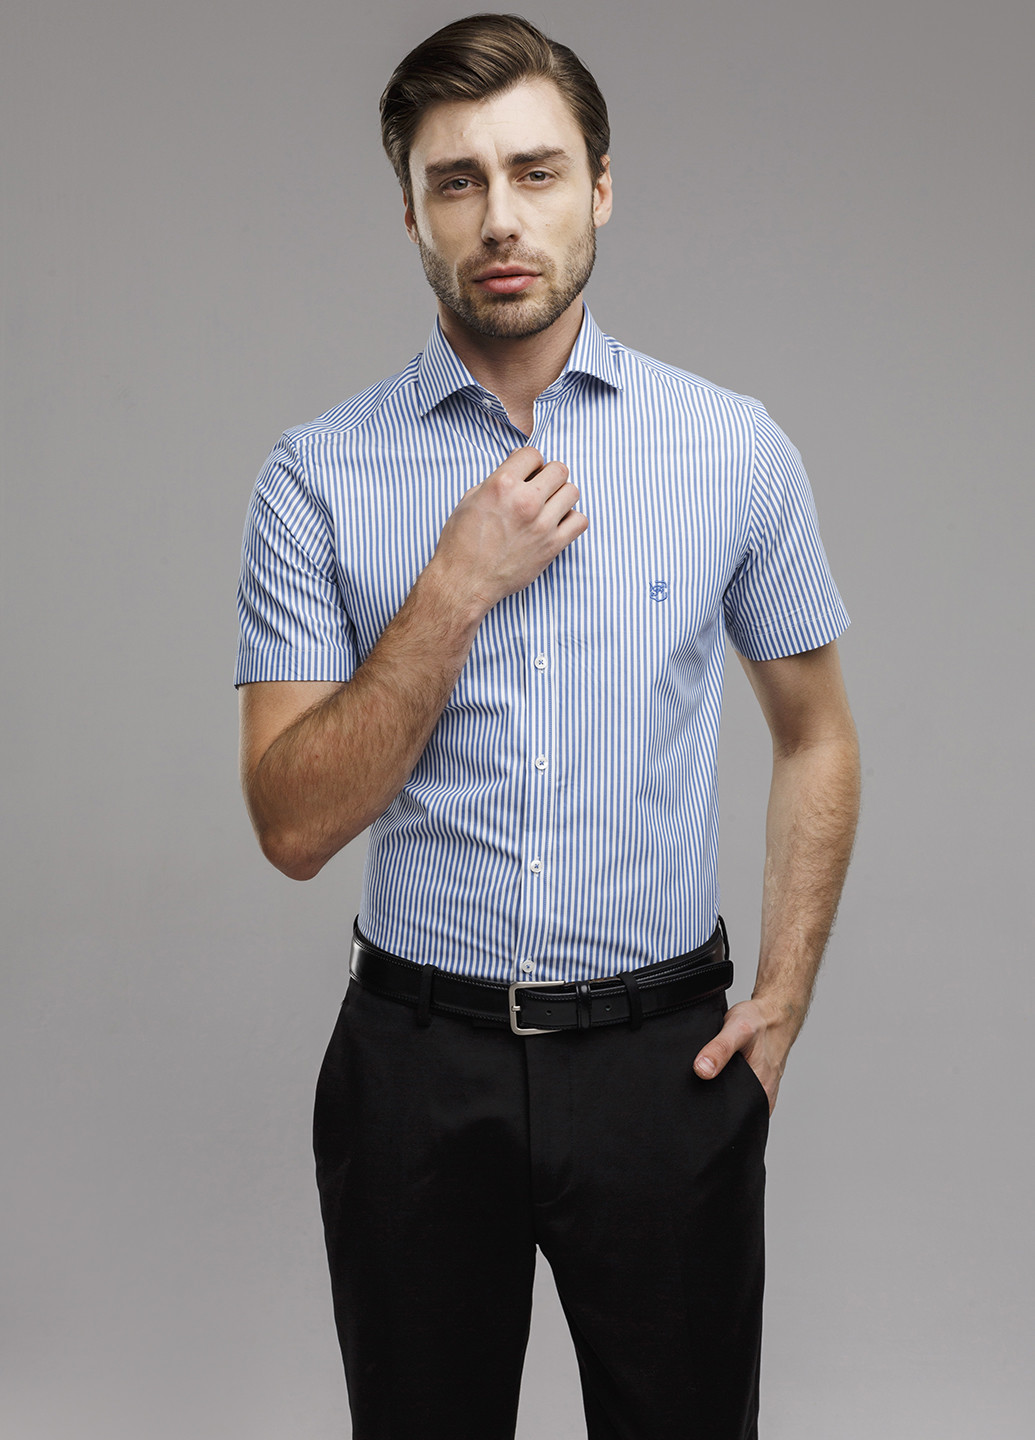 Голубой классическая рубашка в полоску Franttini с коротким рукавом